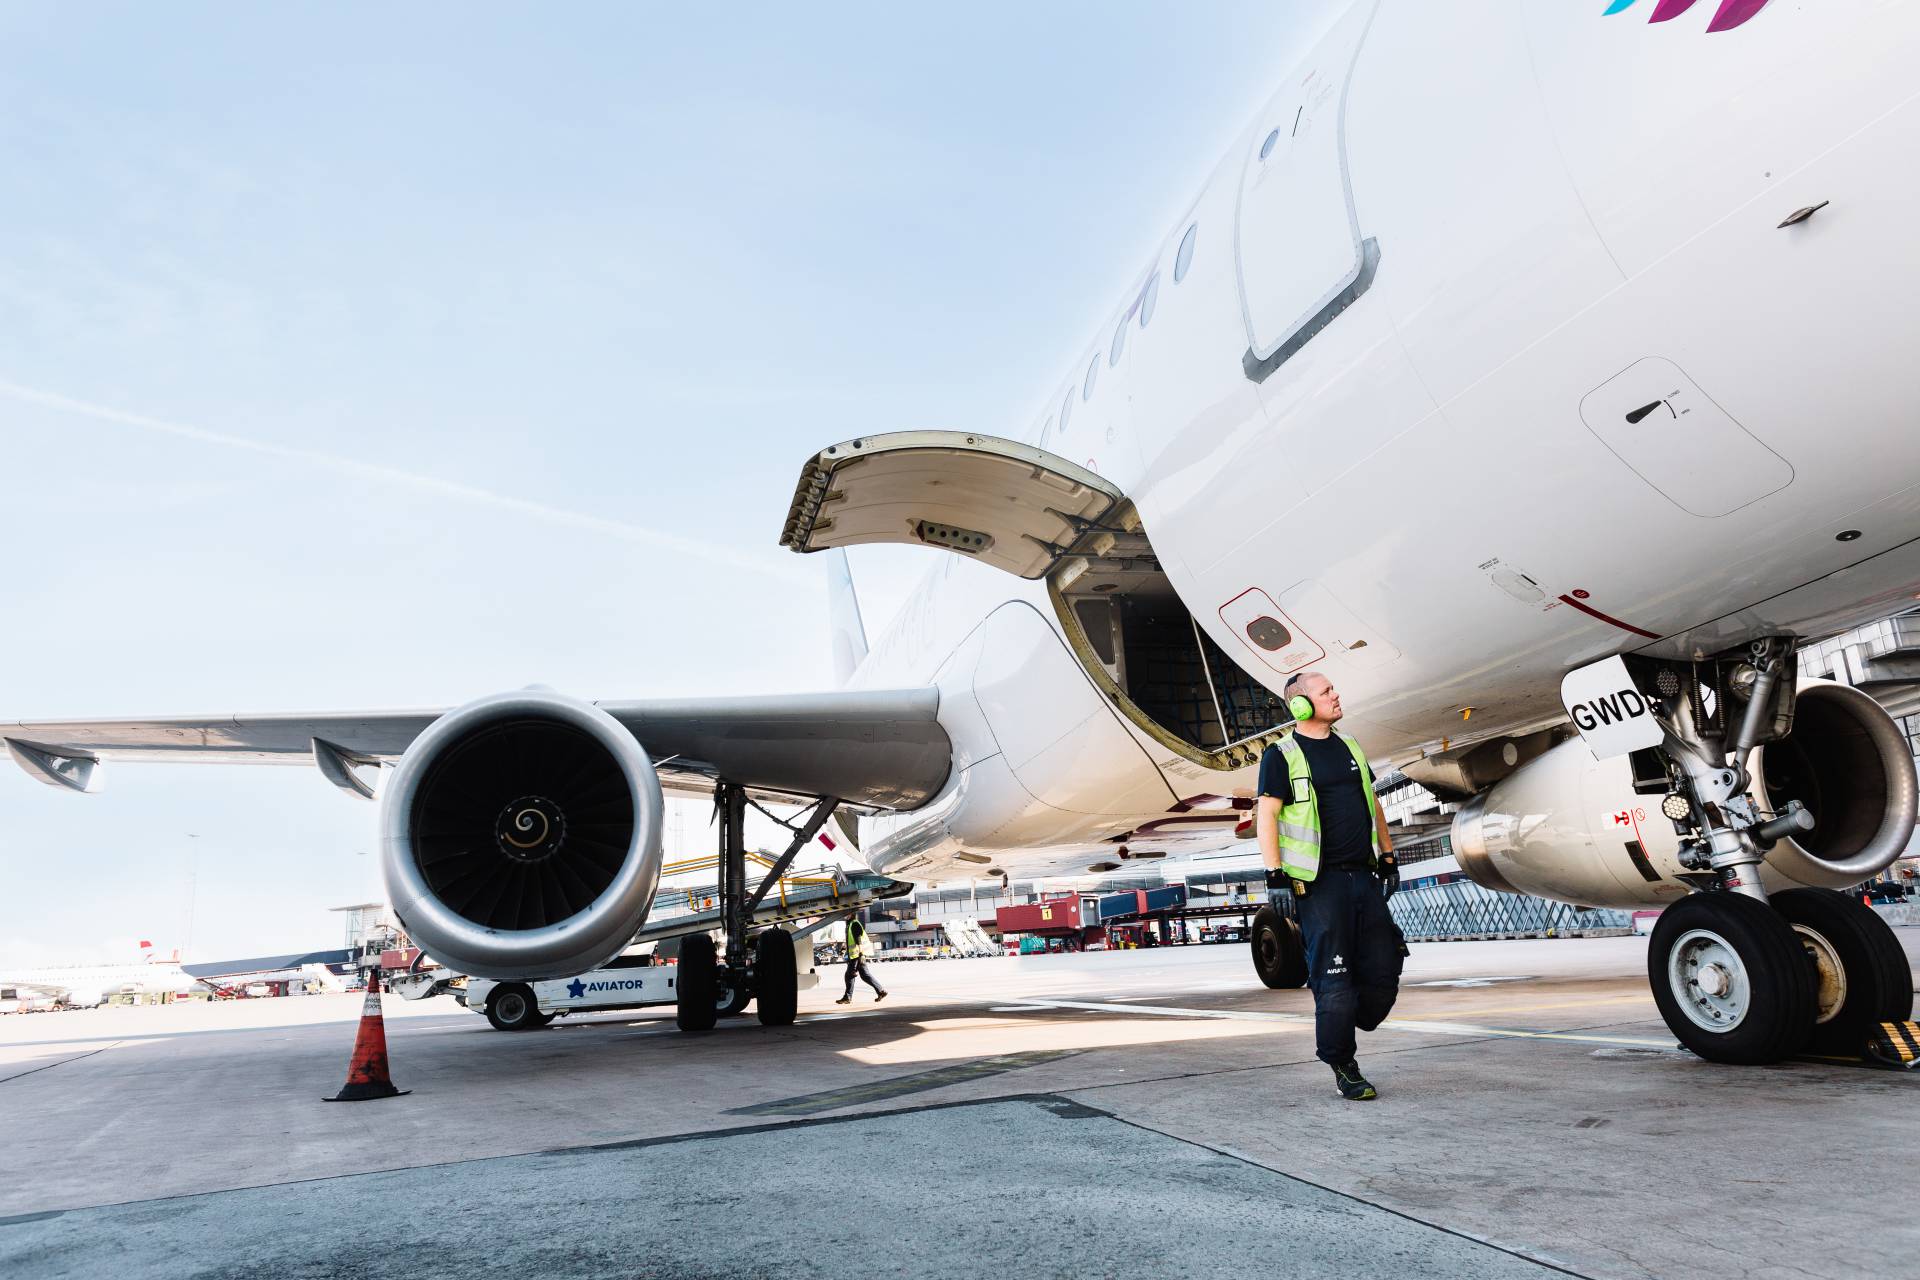 Агент з обслуговування Aviator продовжує співпрацю з Finnair ще на 5 років в аеропорту Гельсінкі